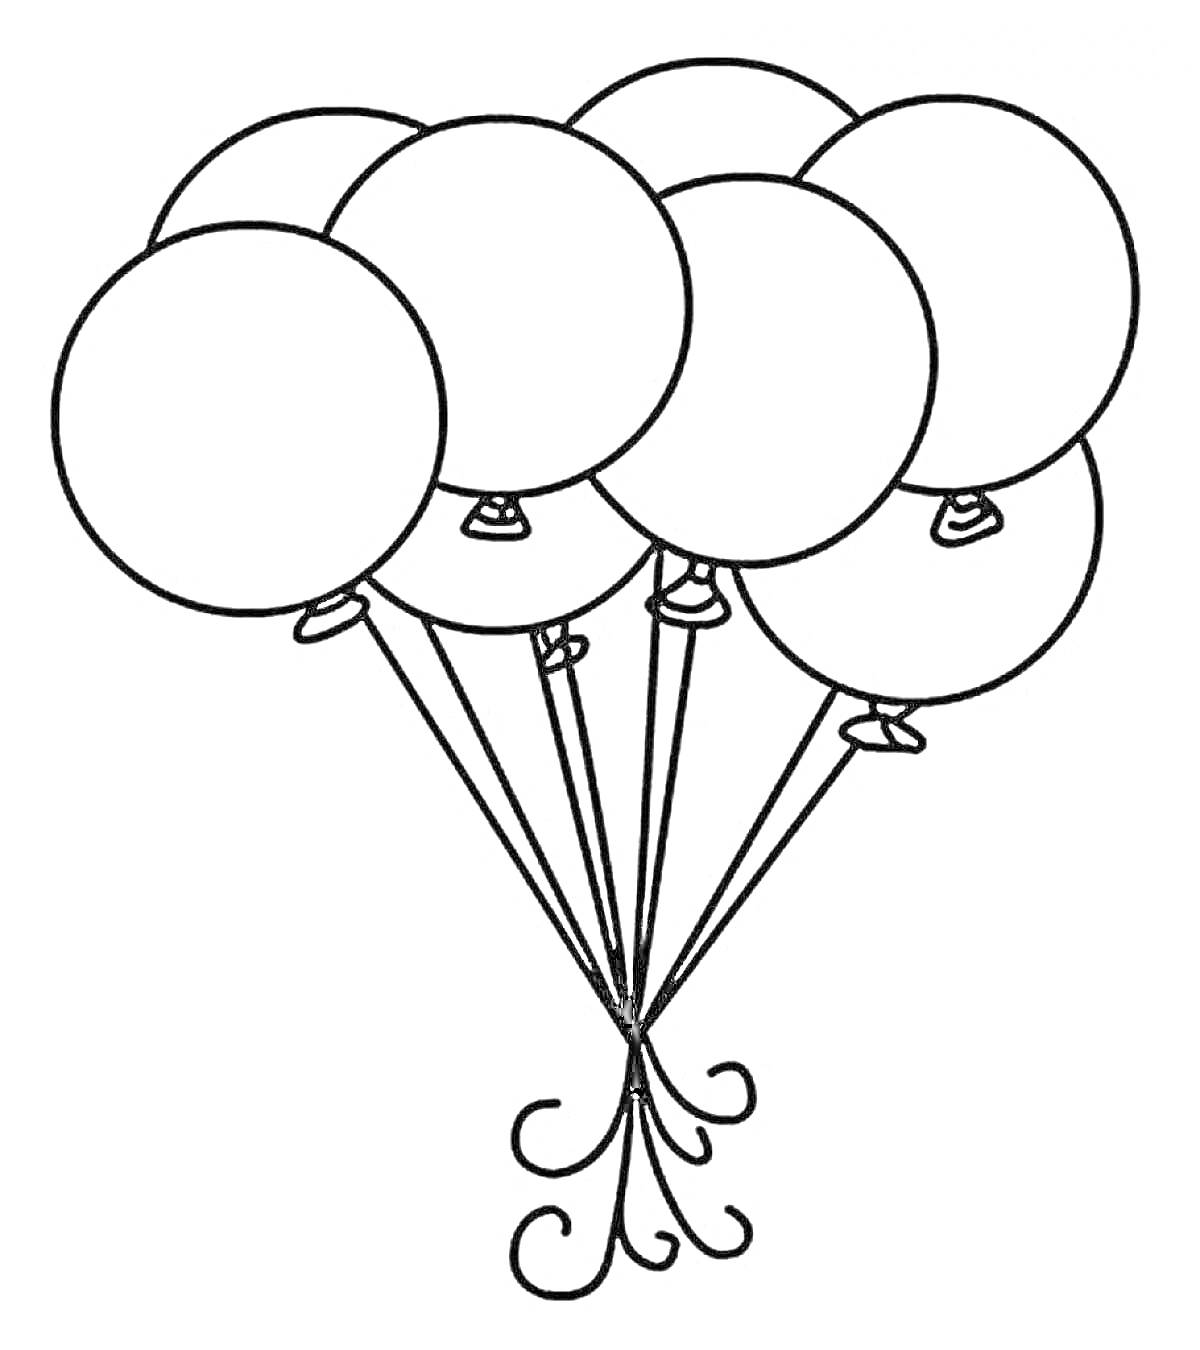 Раскраска Горсть воздушных шариков на веревочках